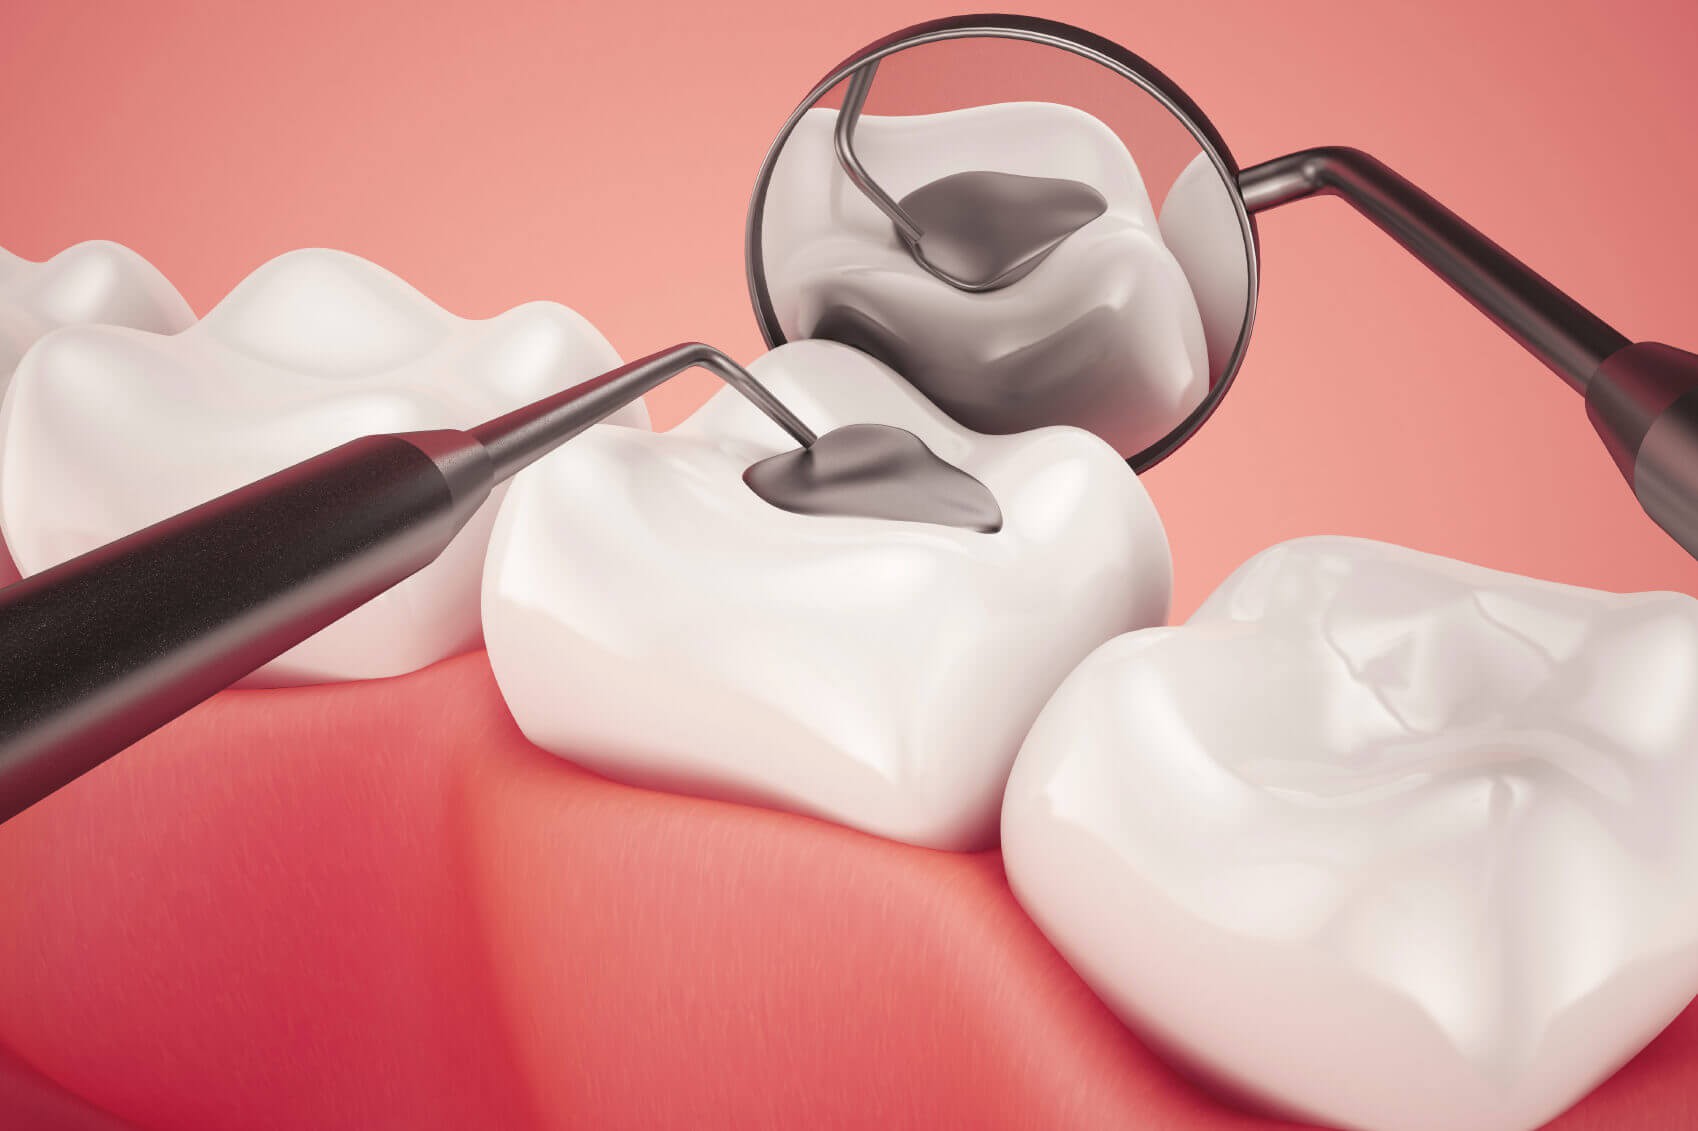 Trám răng thẩm mỹ có đau không? I Chuyên gia giải đáp